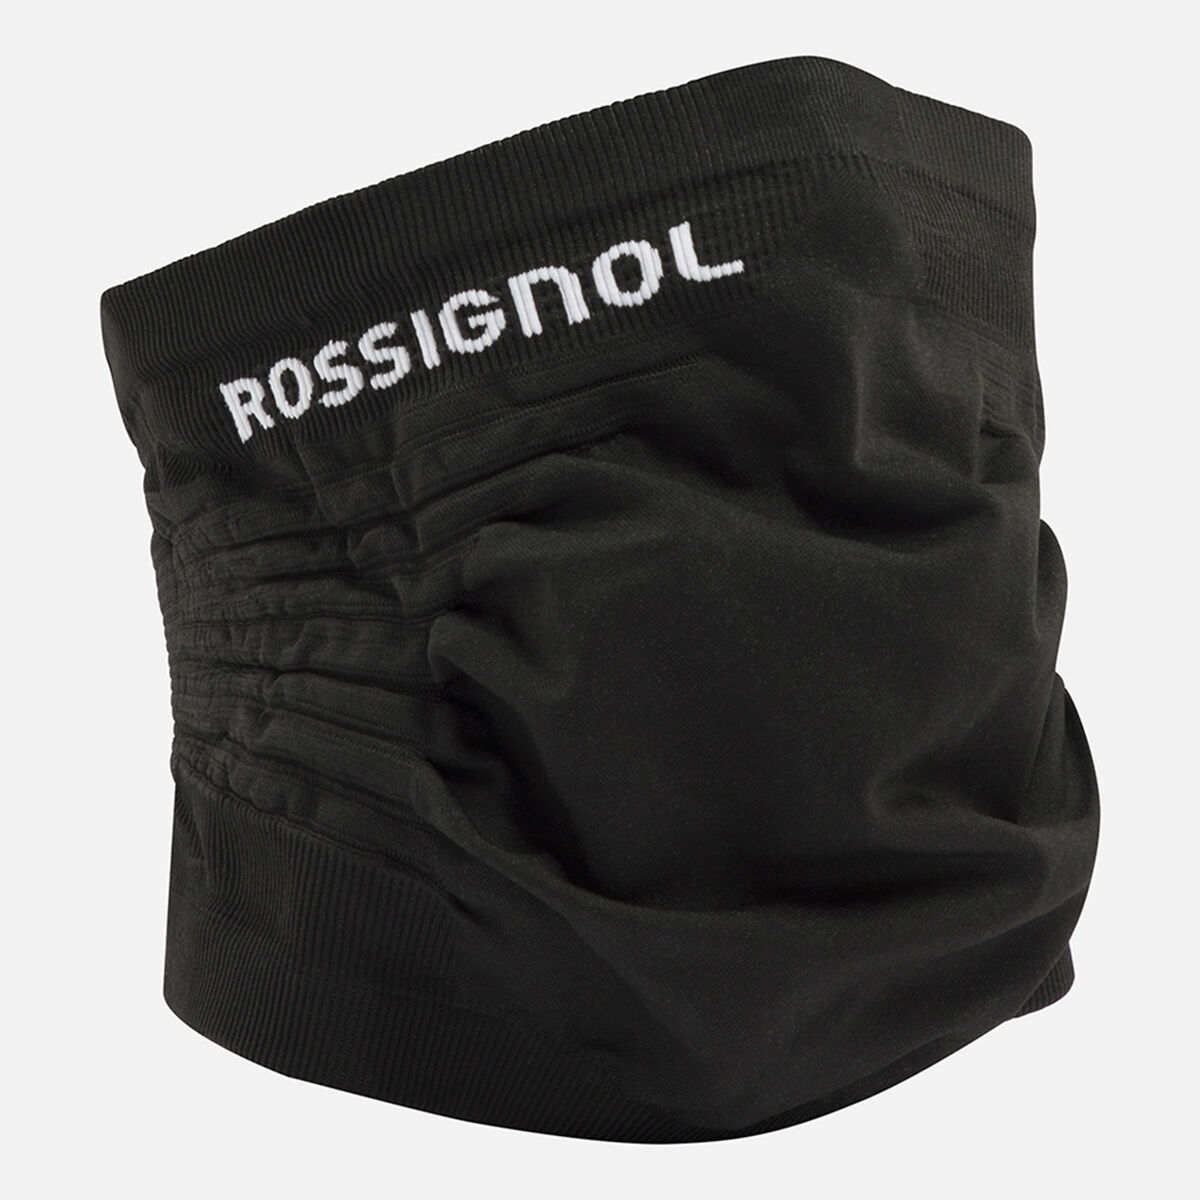 Rossignol Unisex collar mask Black